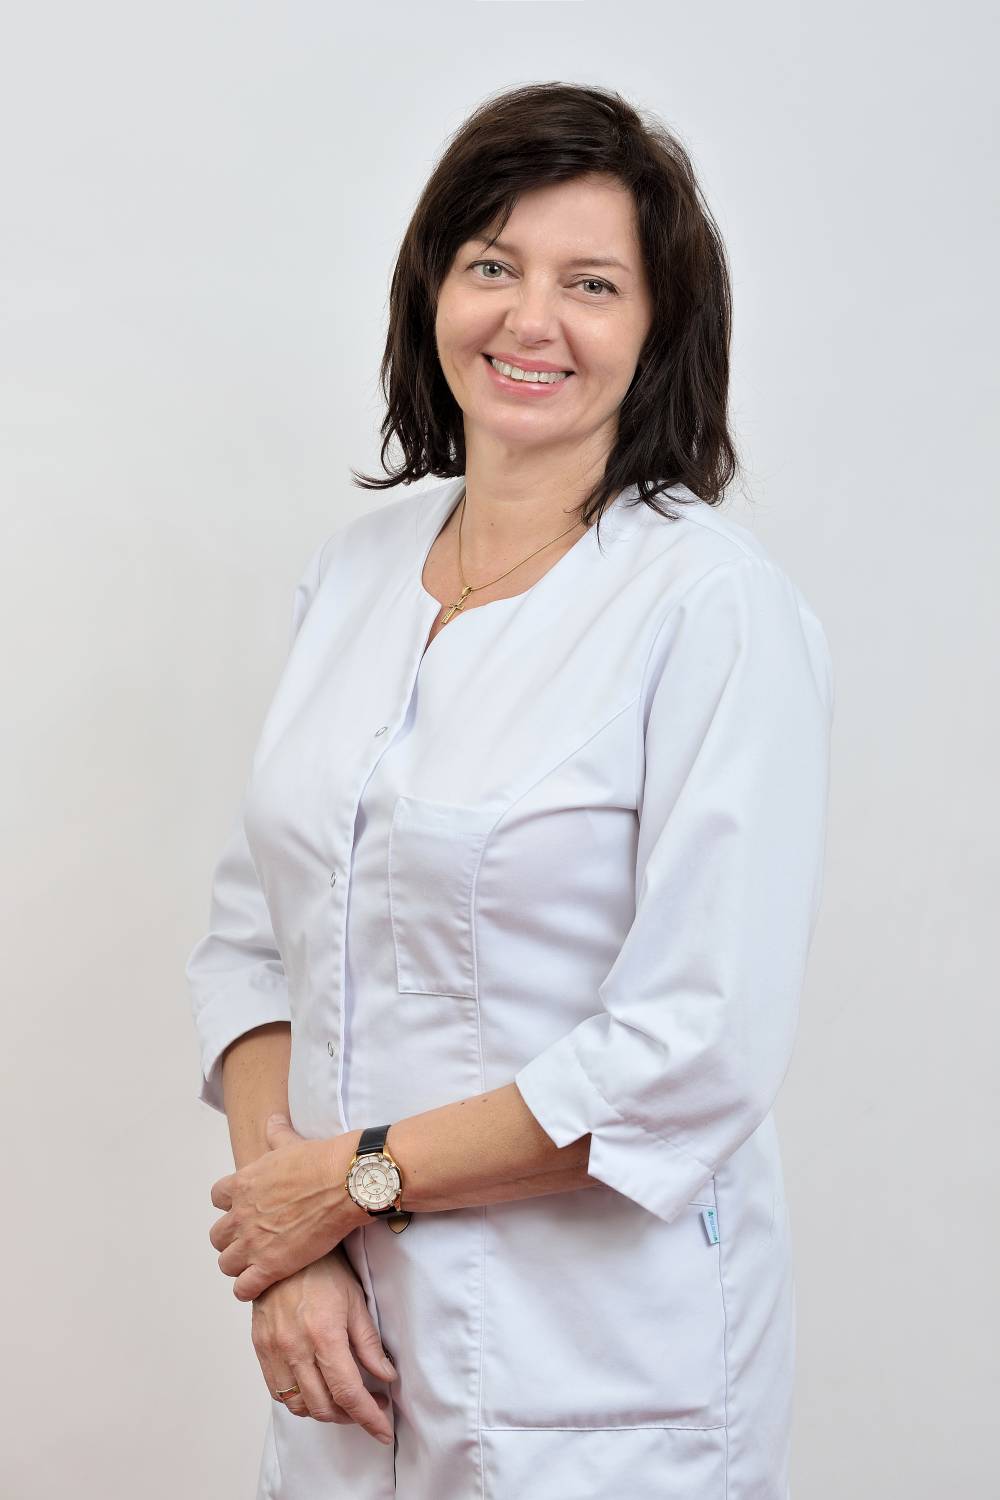 Inga Rudzikienė - Gyd. akušerė - ginekologė